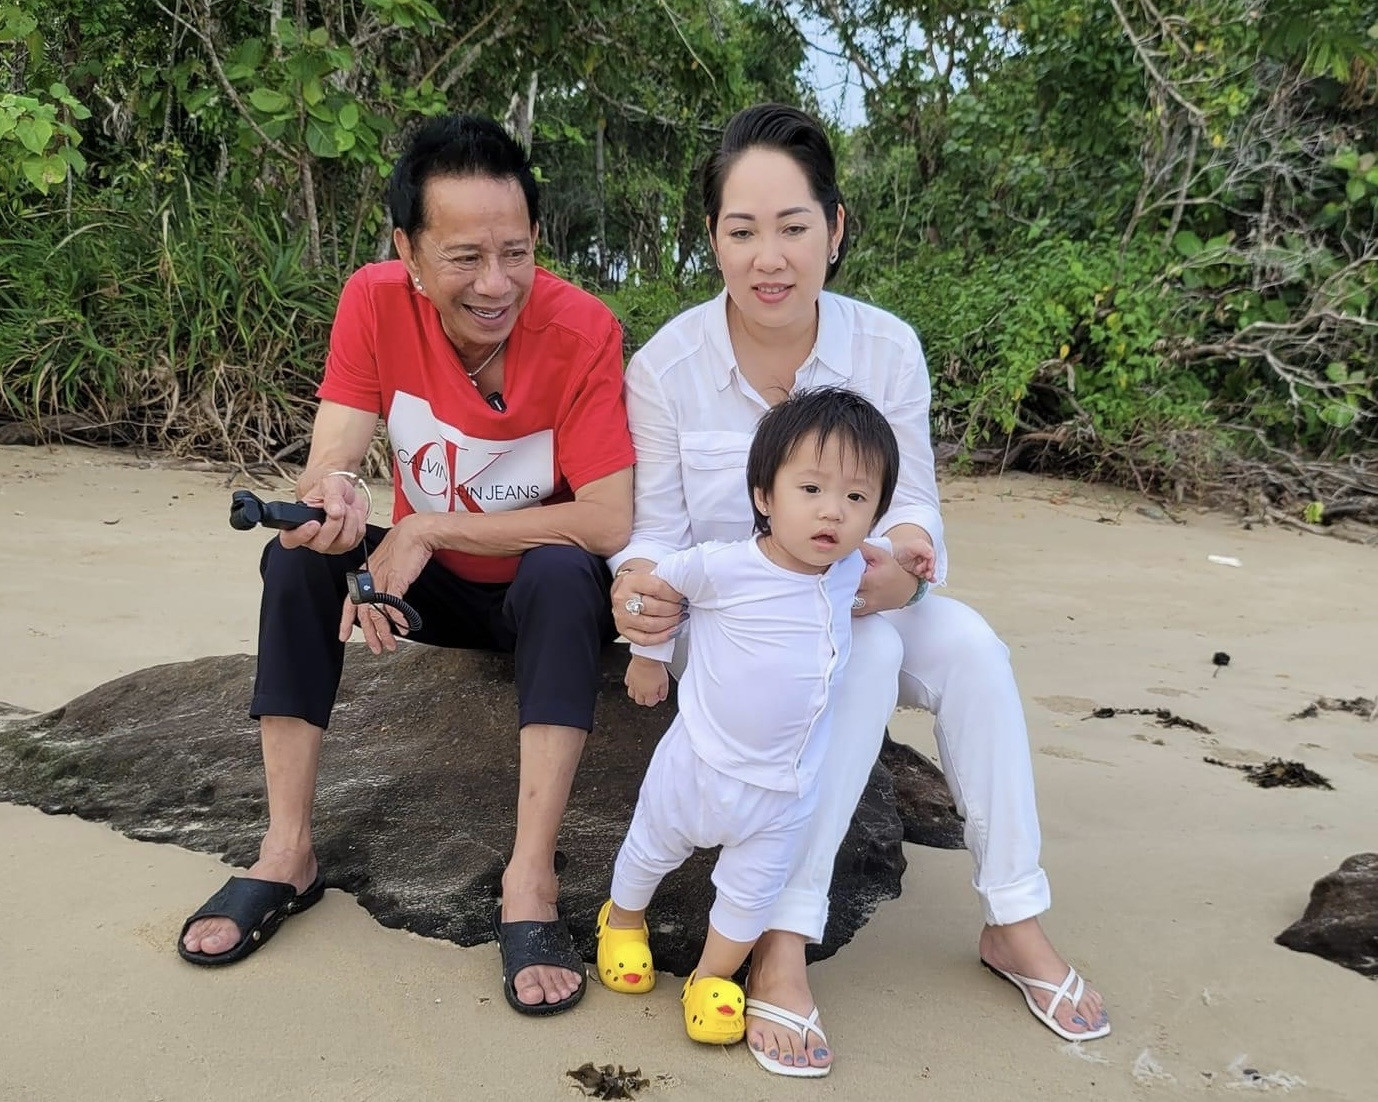 Danh hài Bảo Chung: U70 bên vợ kém 29 tuổi, bán cơm tấm nuôi con nhỏ  - 5